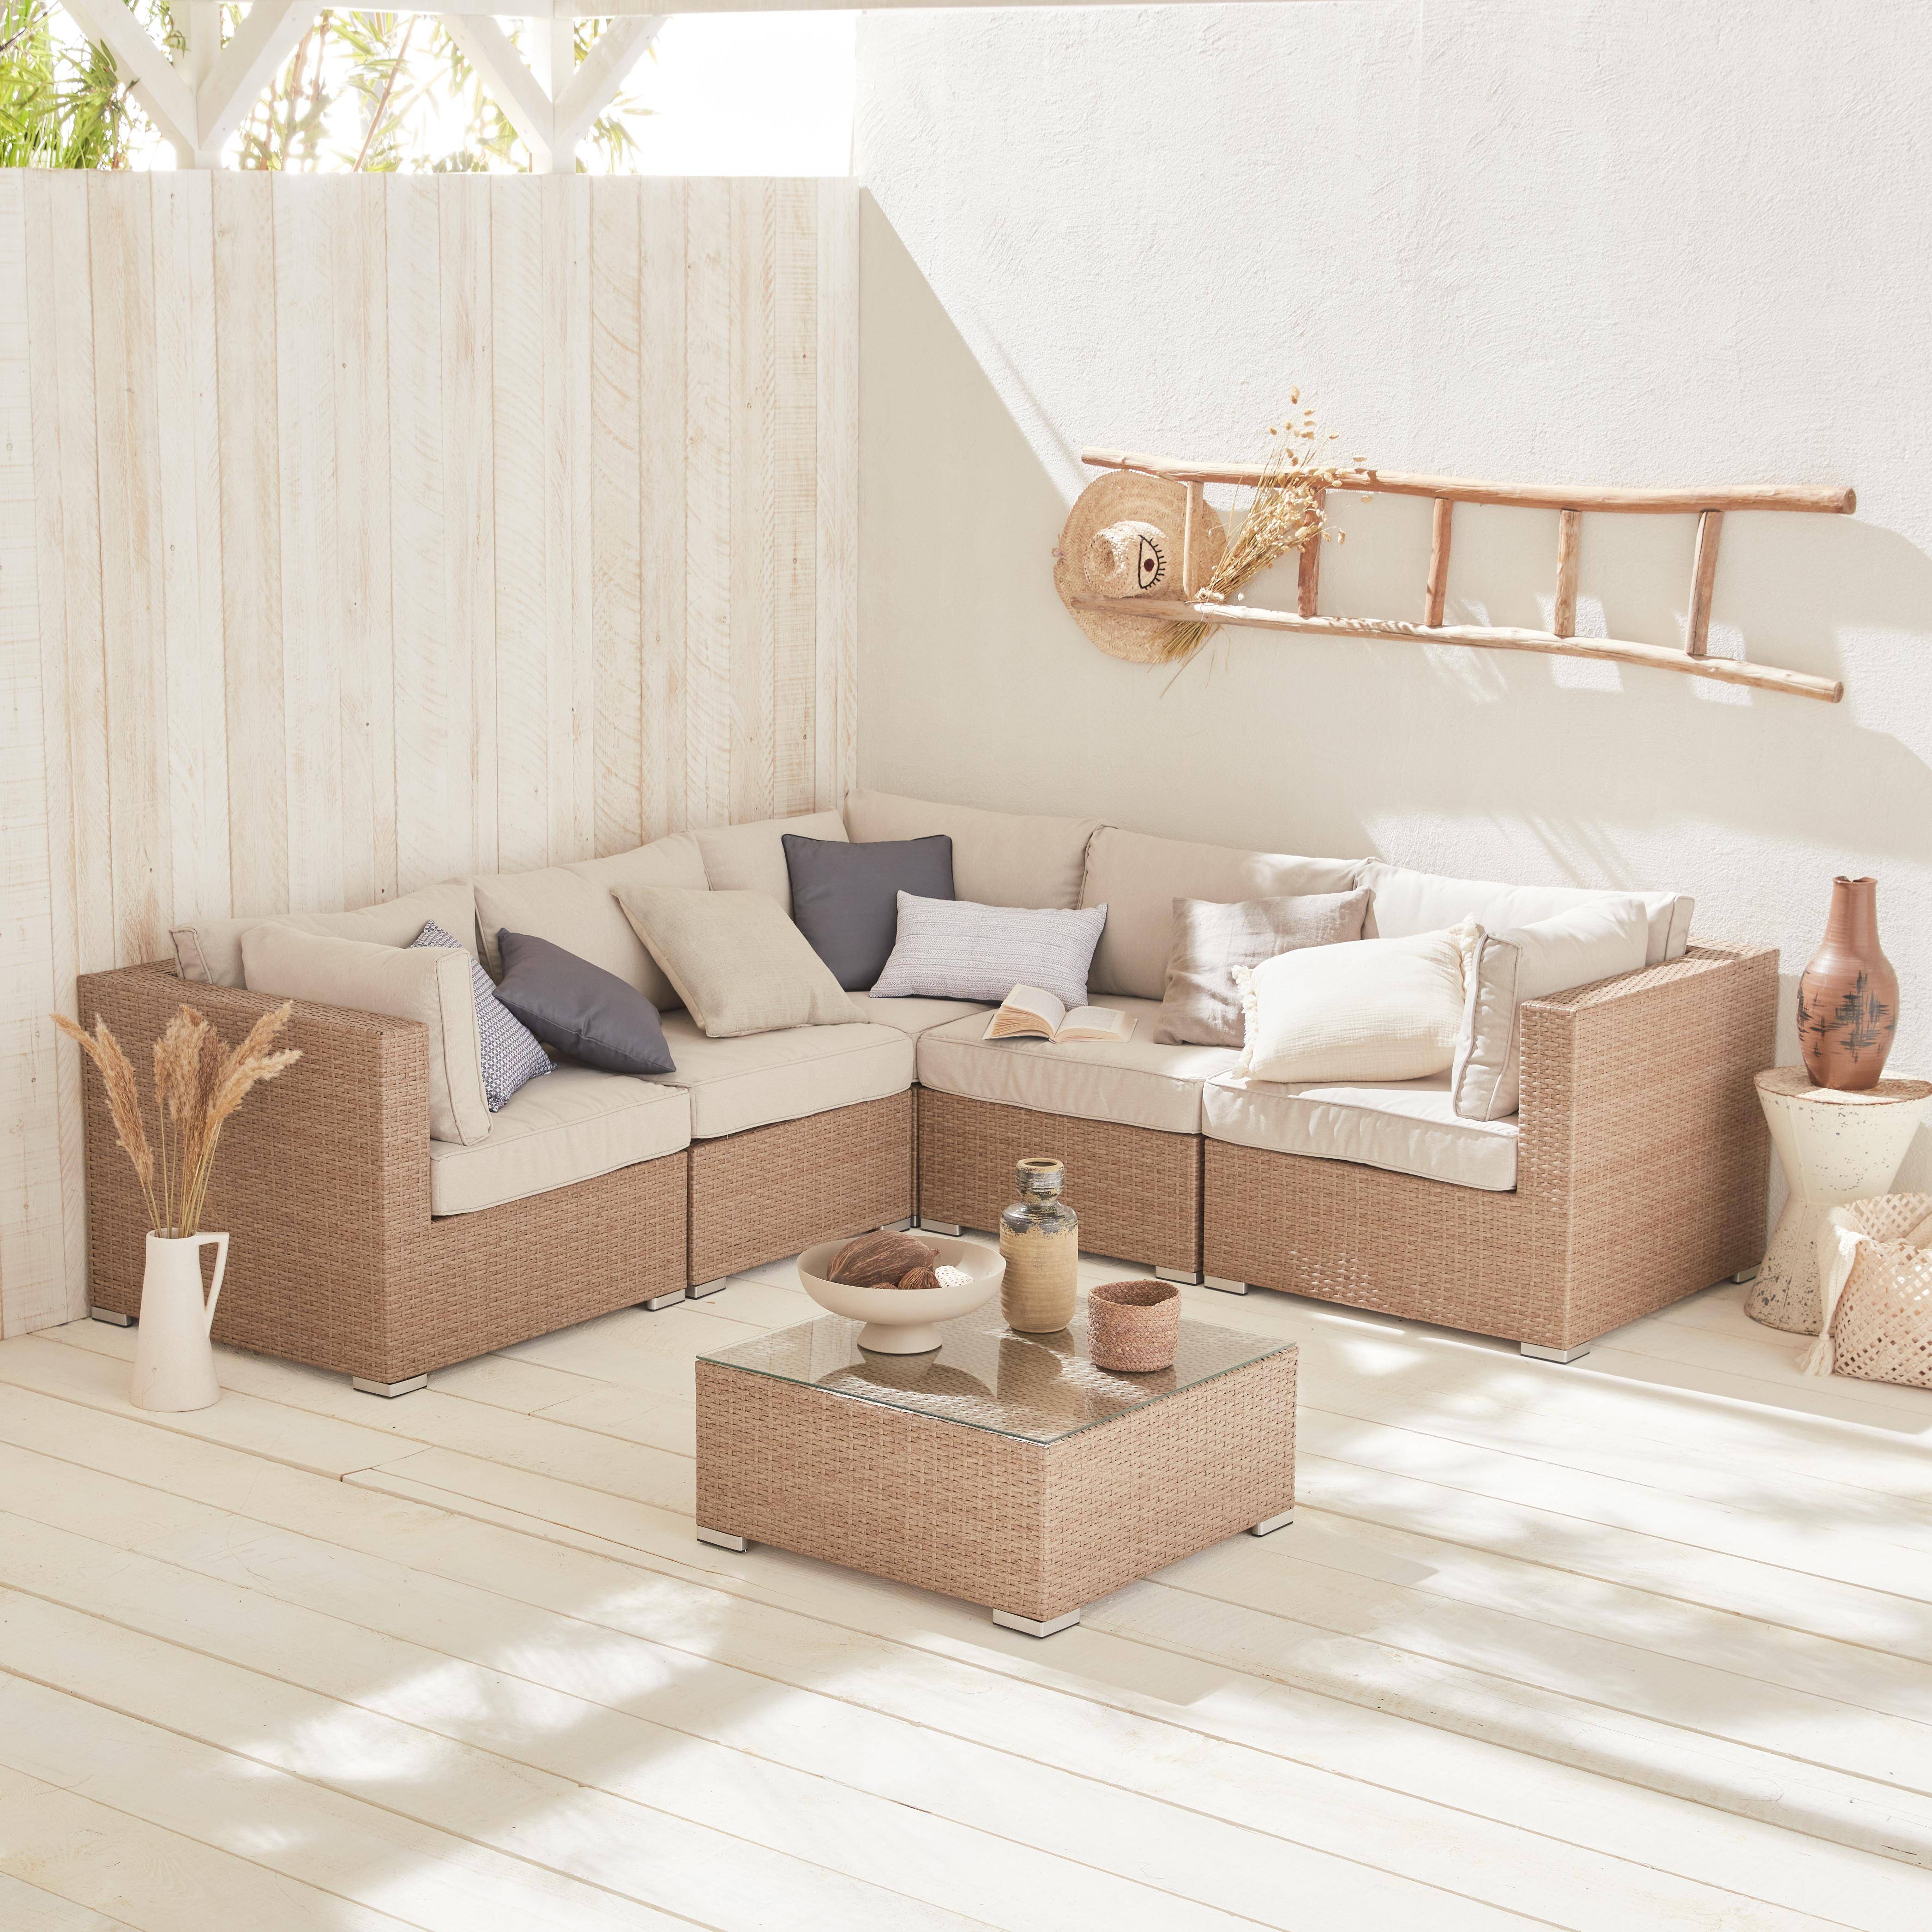 Muebles de jardin, conjunto sofa de exterior, Varios tonos de Beige, 5 plazas, ratan sintetico, resina trenzada - NAPOLI Photo1